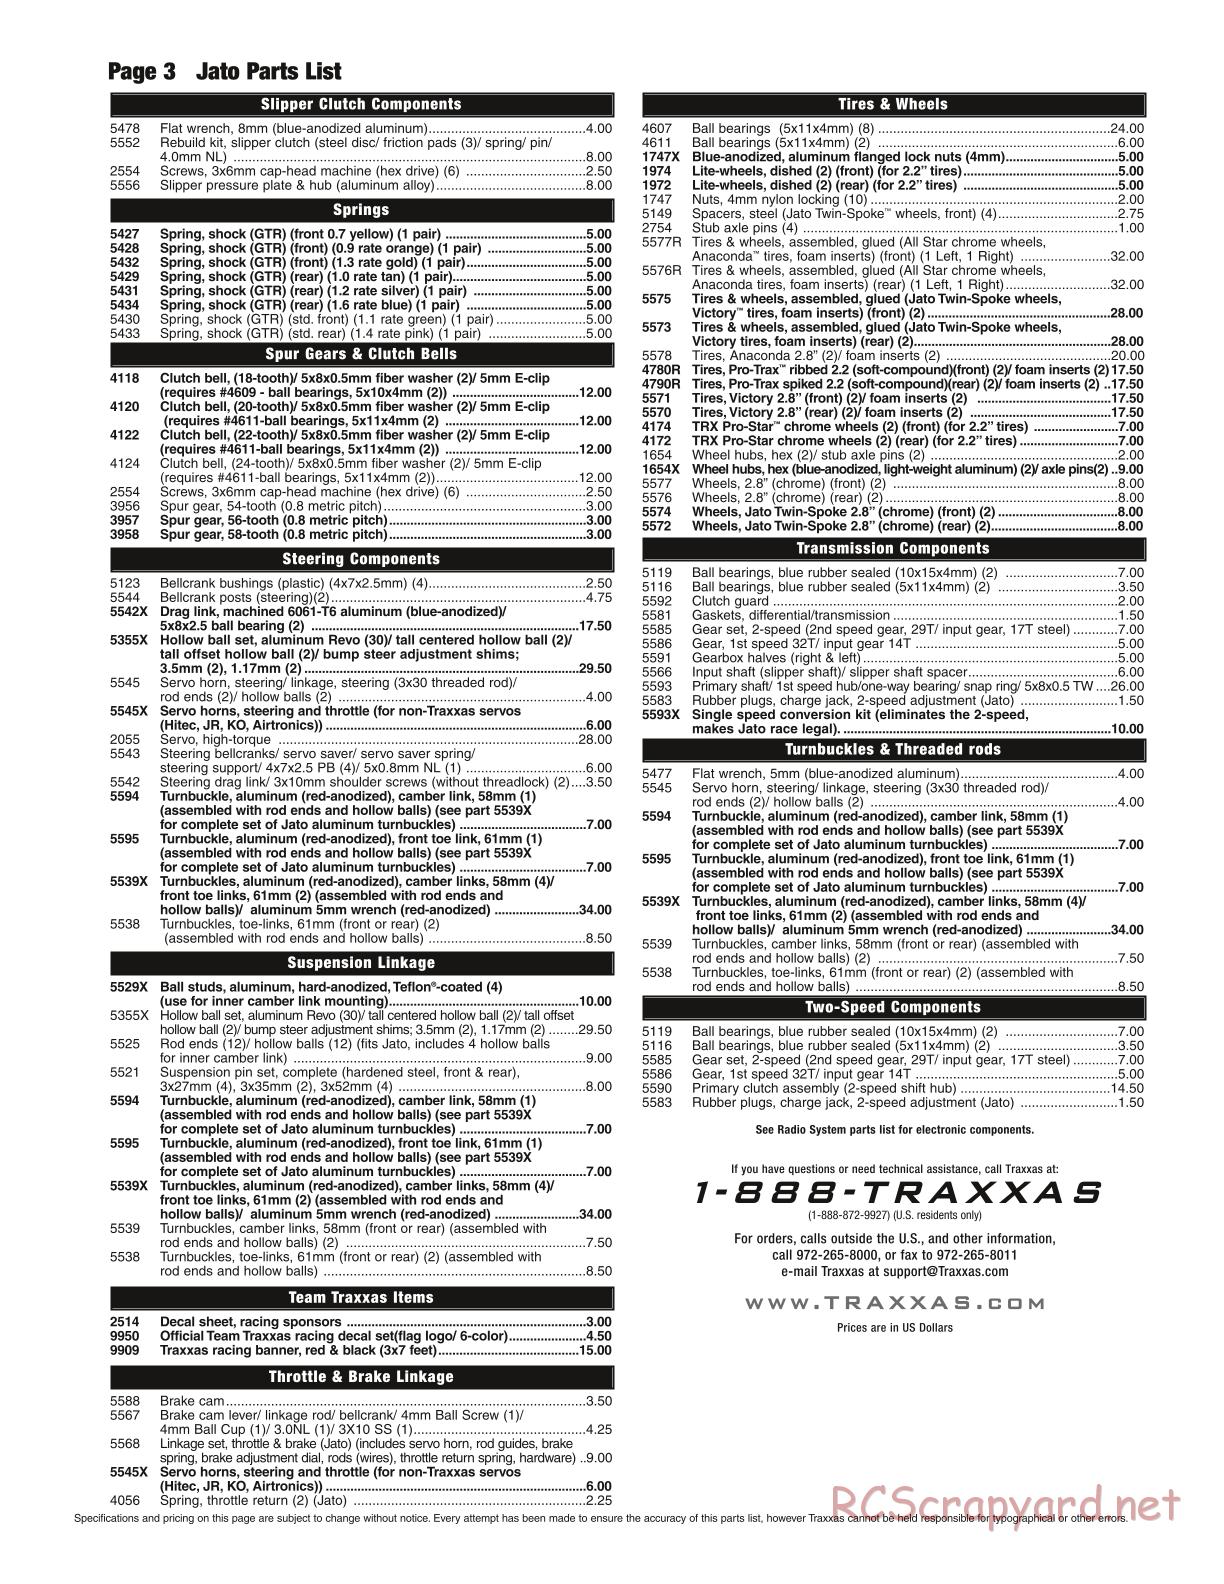 Traxxas - Jato 3.3 (2006) - Parts List - Page 3